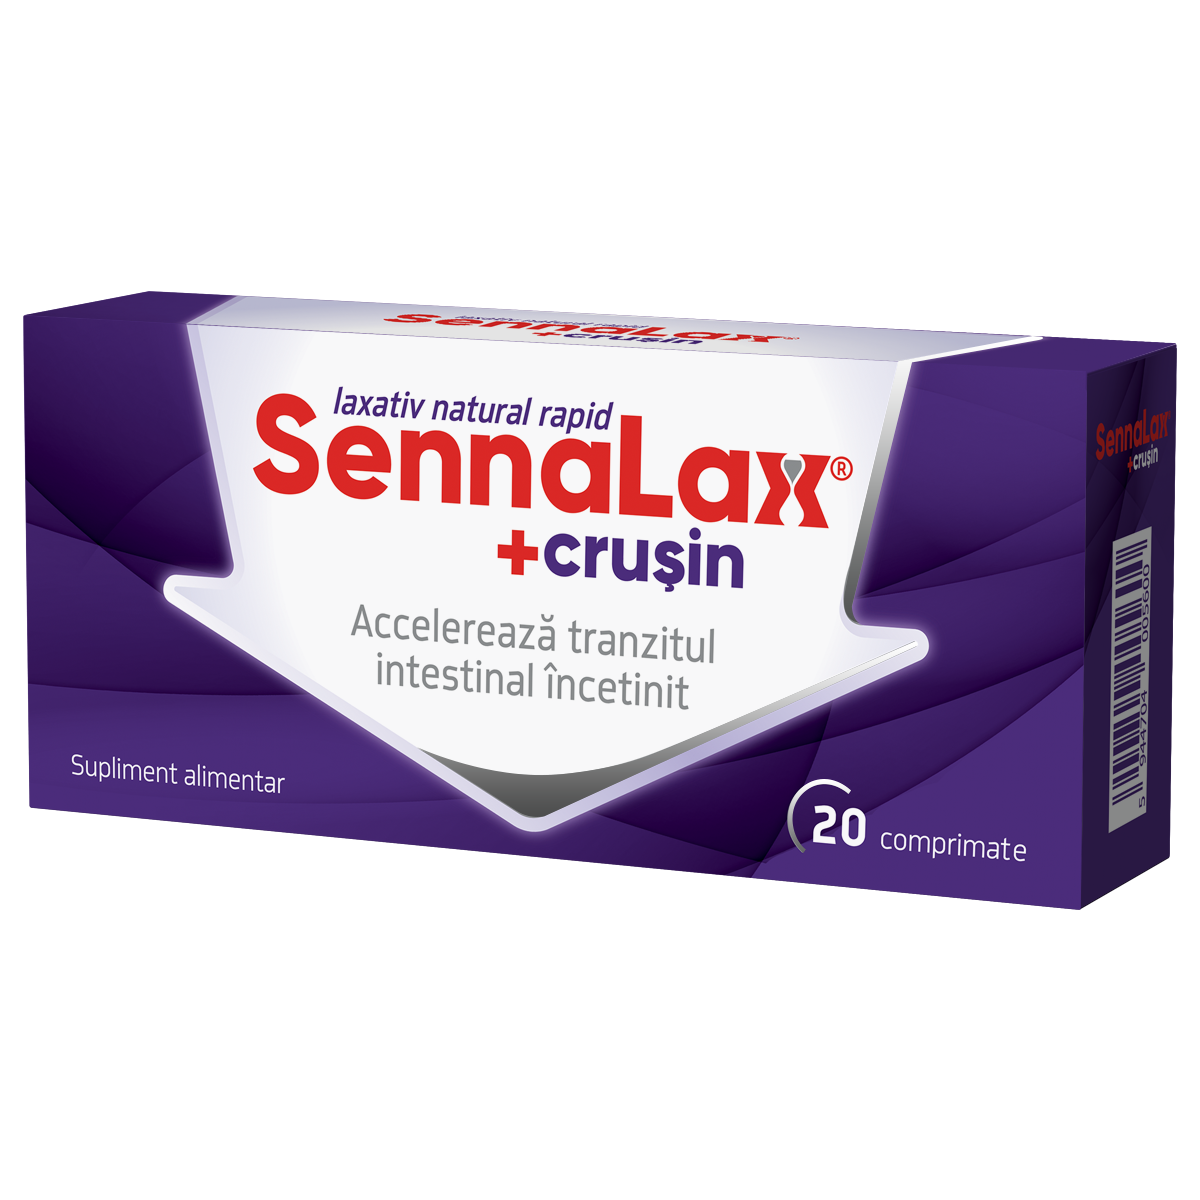 Constipatie - Sennalax plus cruşin, 20 comprimate, Biofarm, sinapis.ro